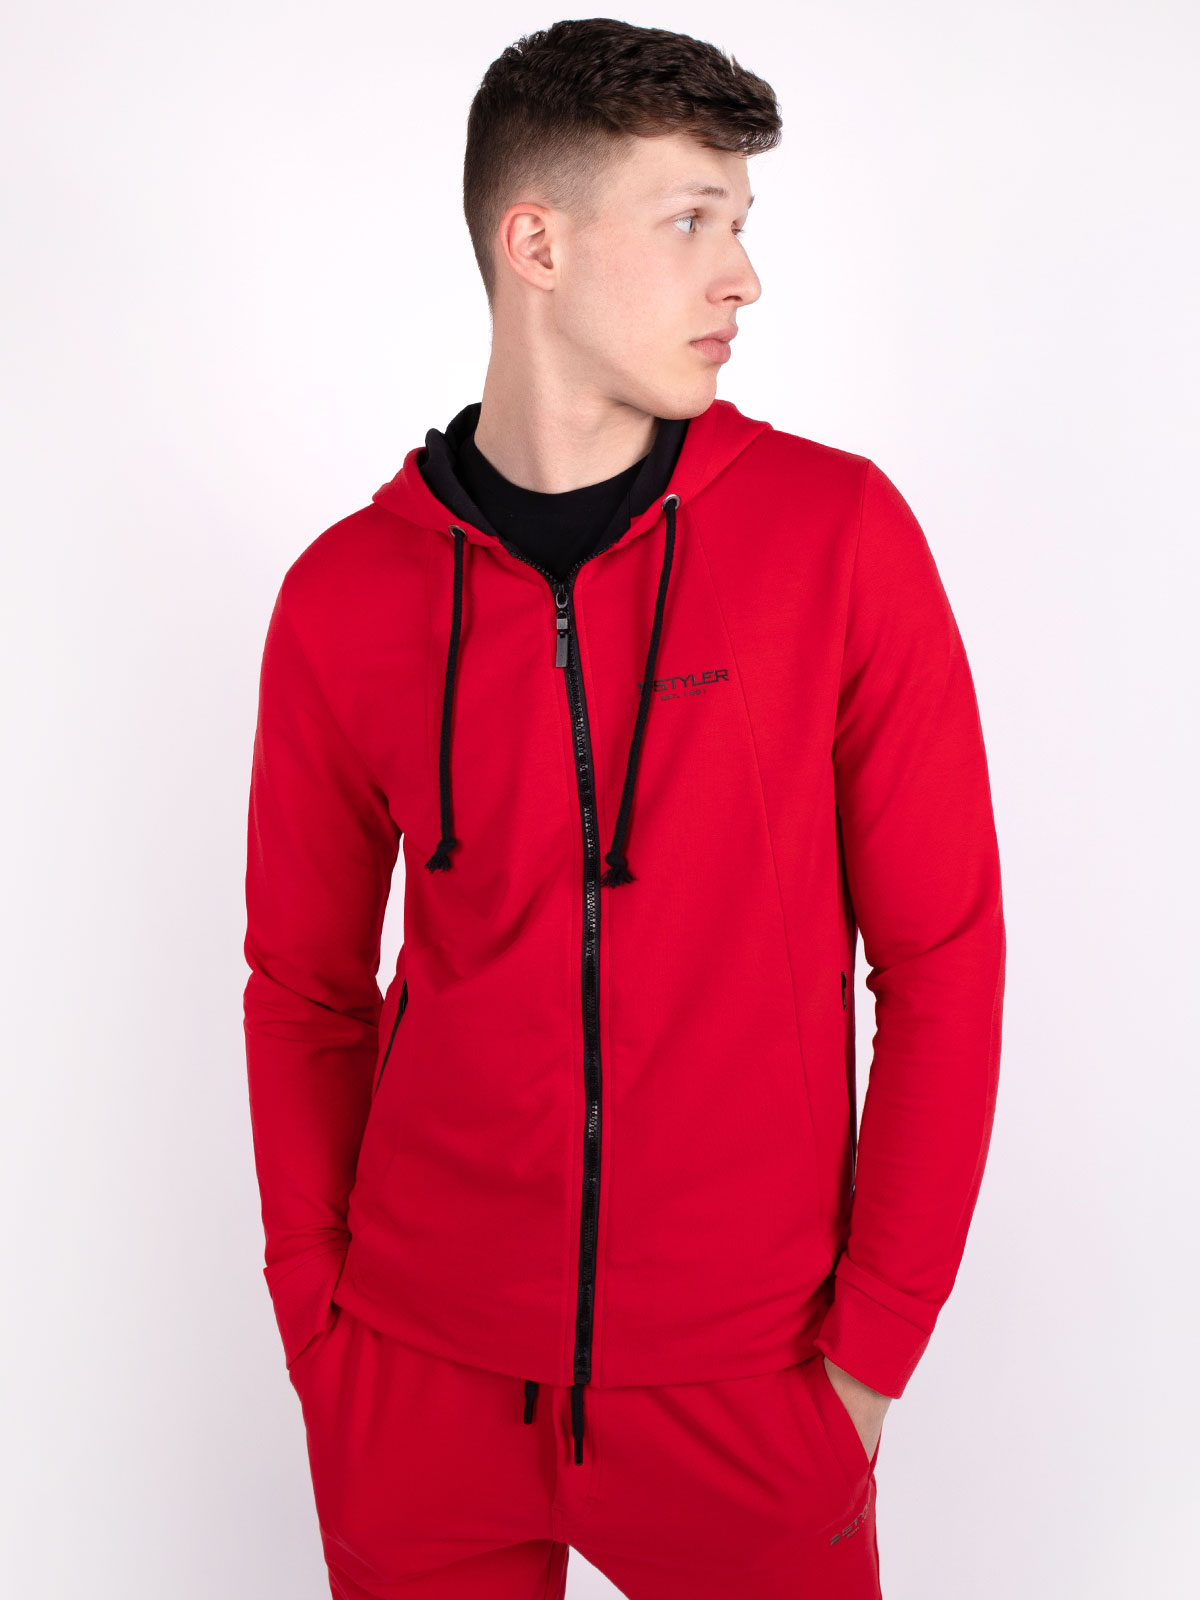 Αθλητικό φούτερ σε κόκκινο χρώμα με κου - 28090 € 27.56 img2